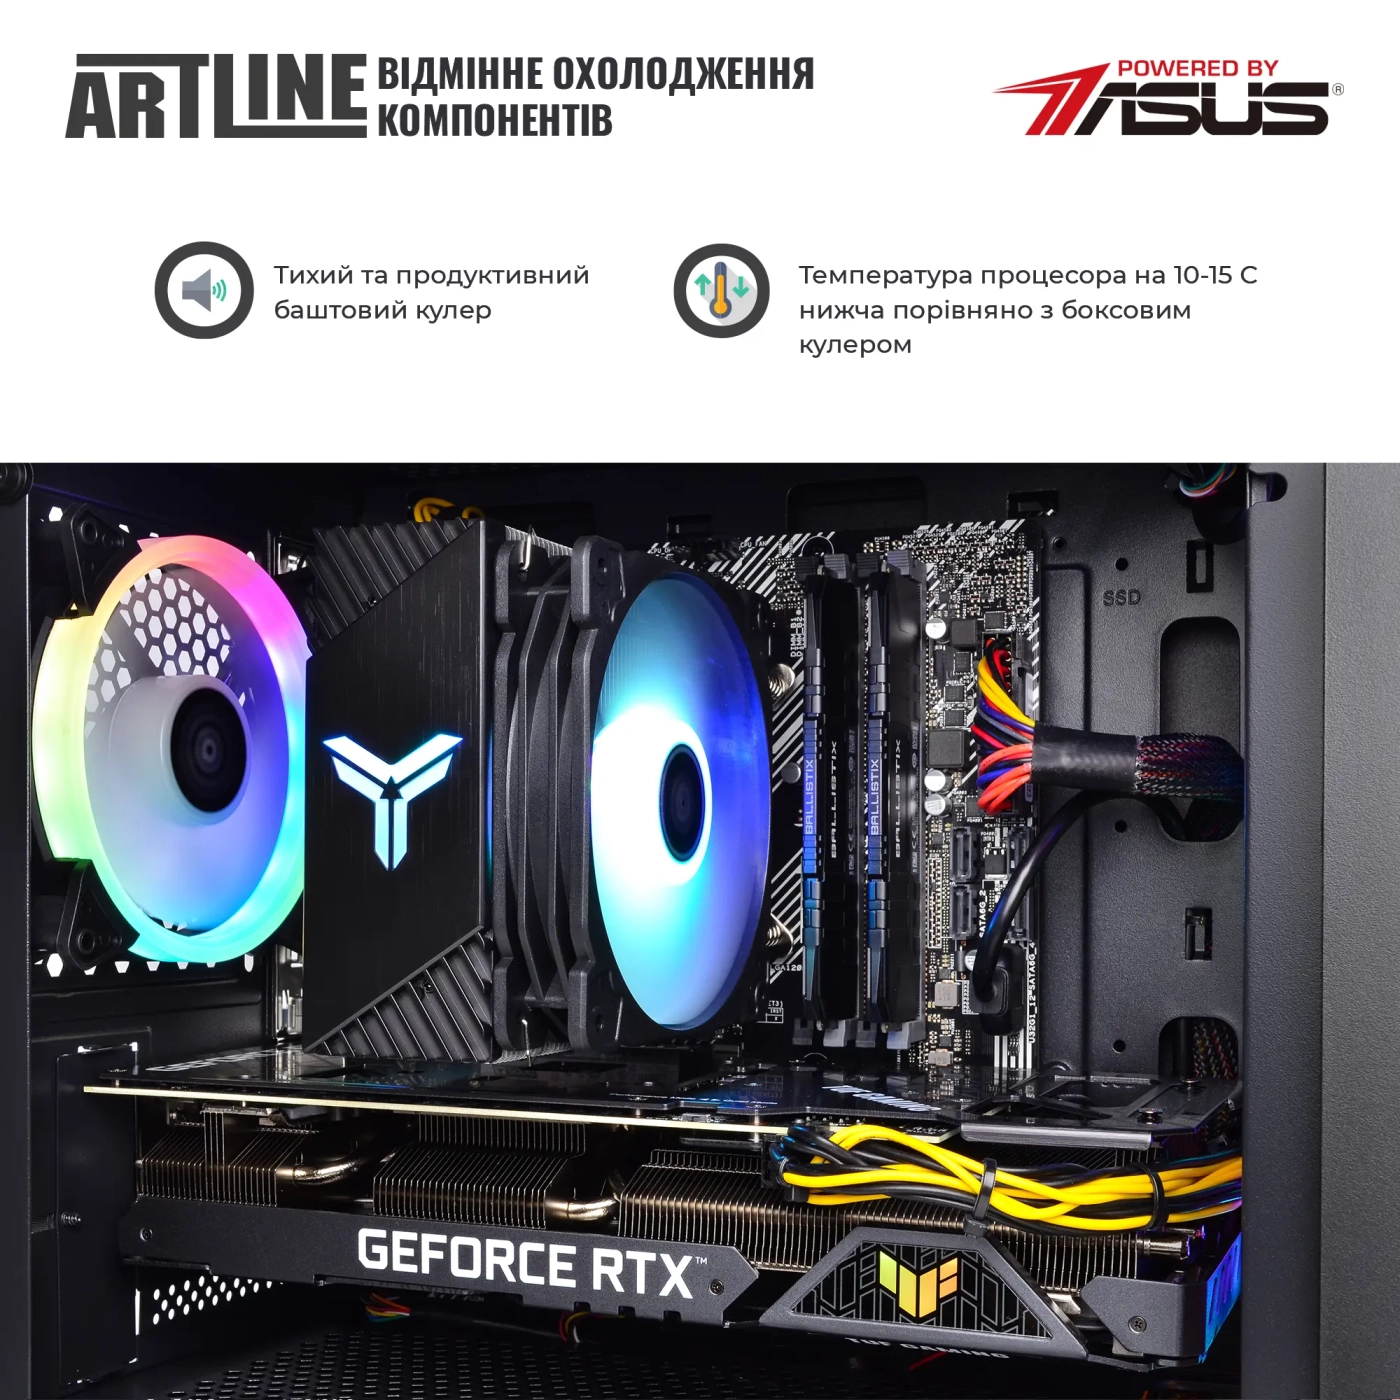 Купить Компьютер ARTLINE Gaming X57v51 - фото 4